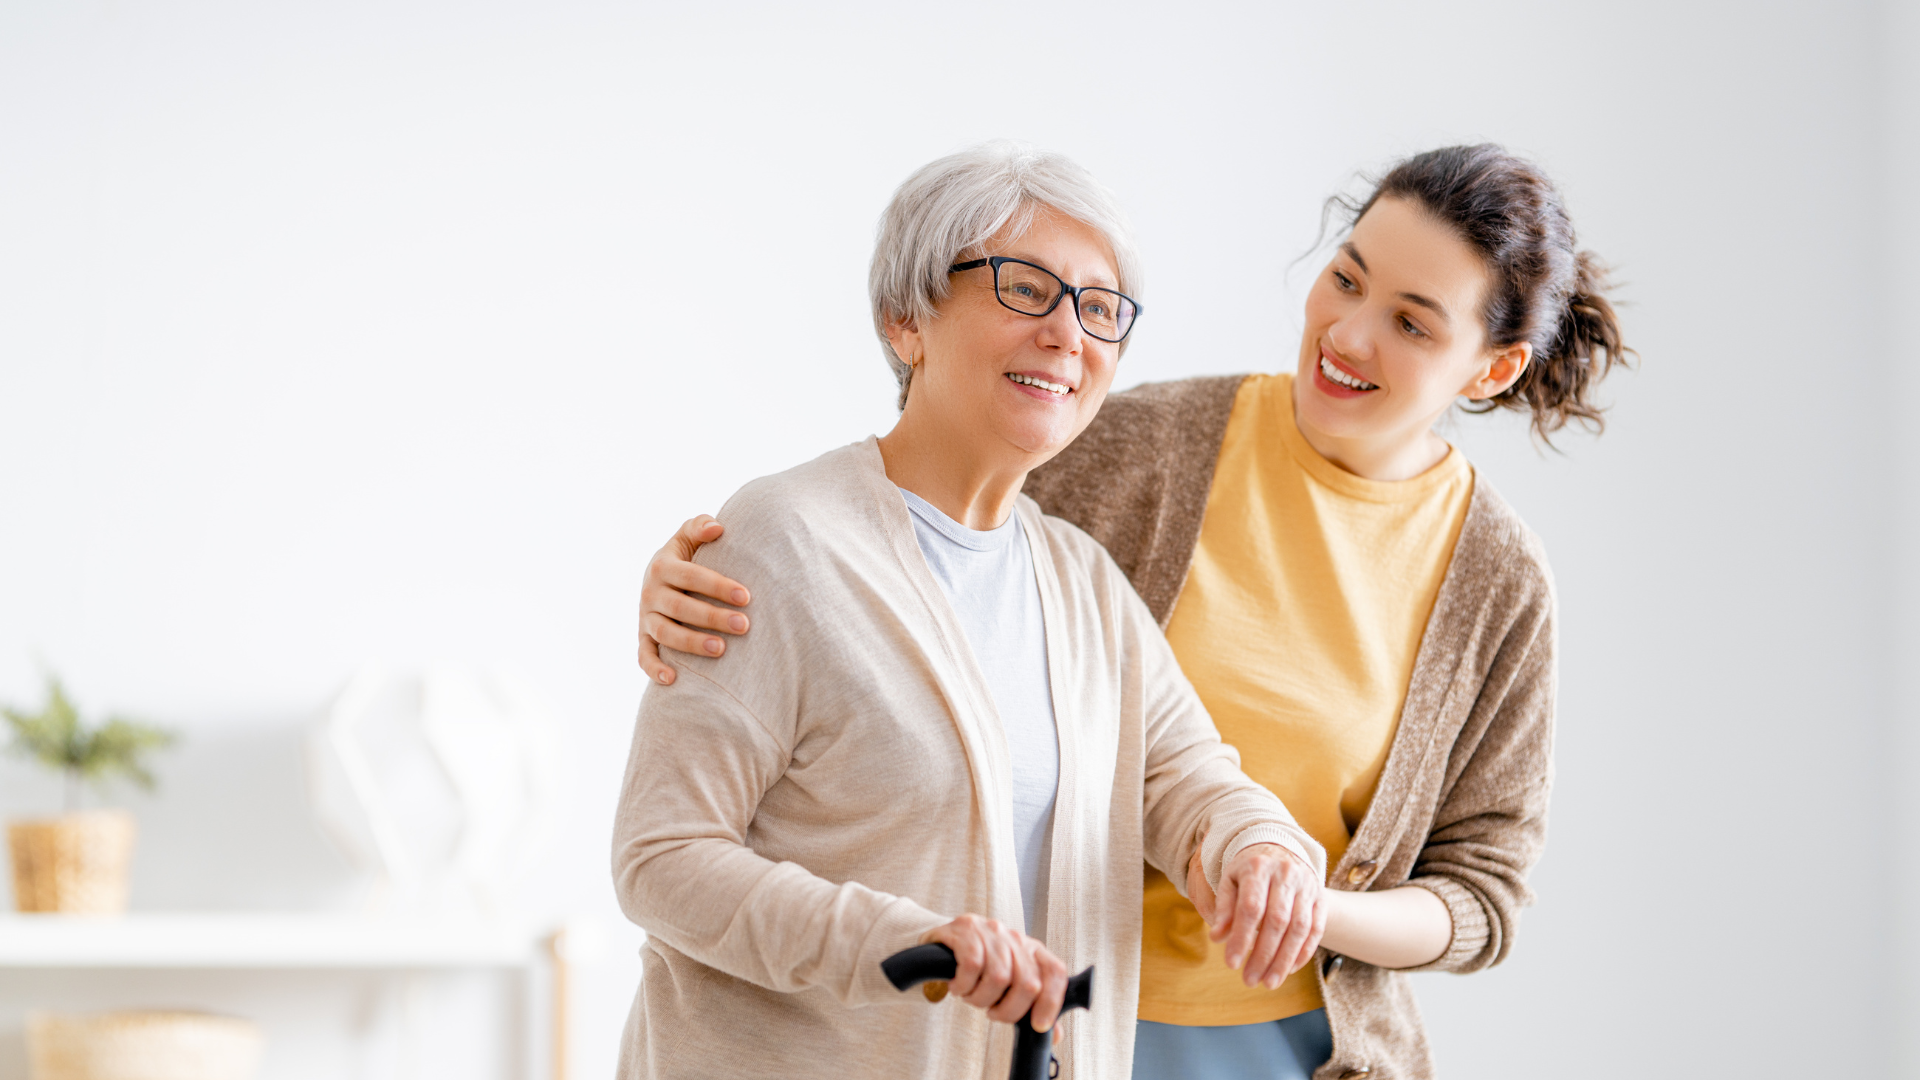 Woman caregiver helping older adult walk